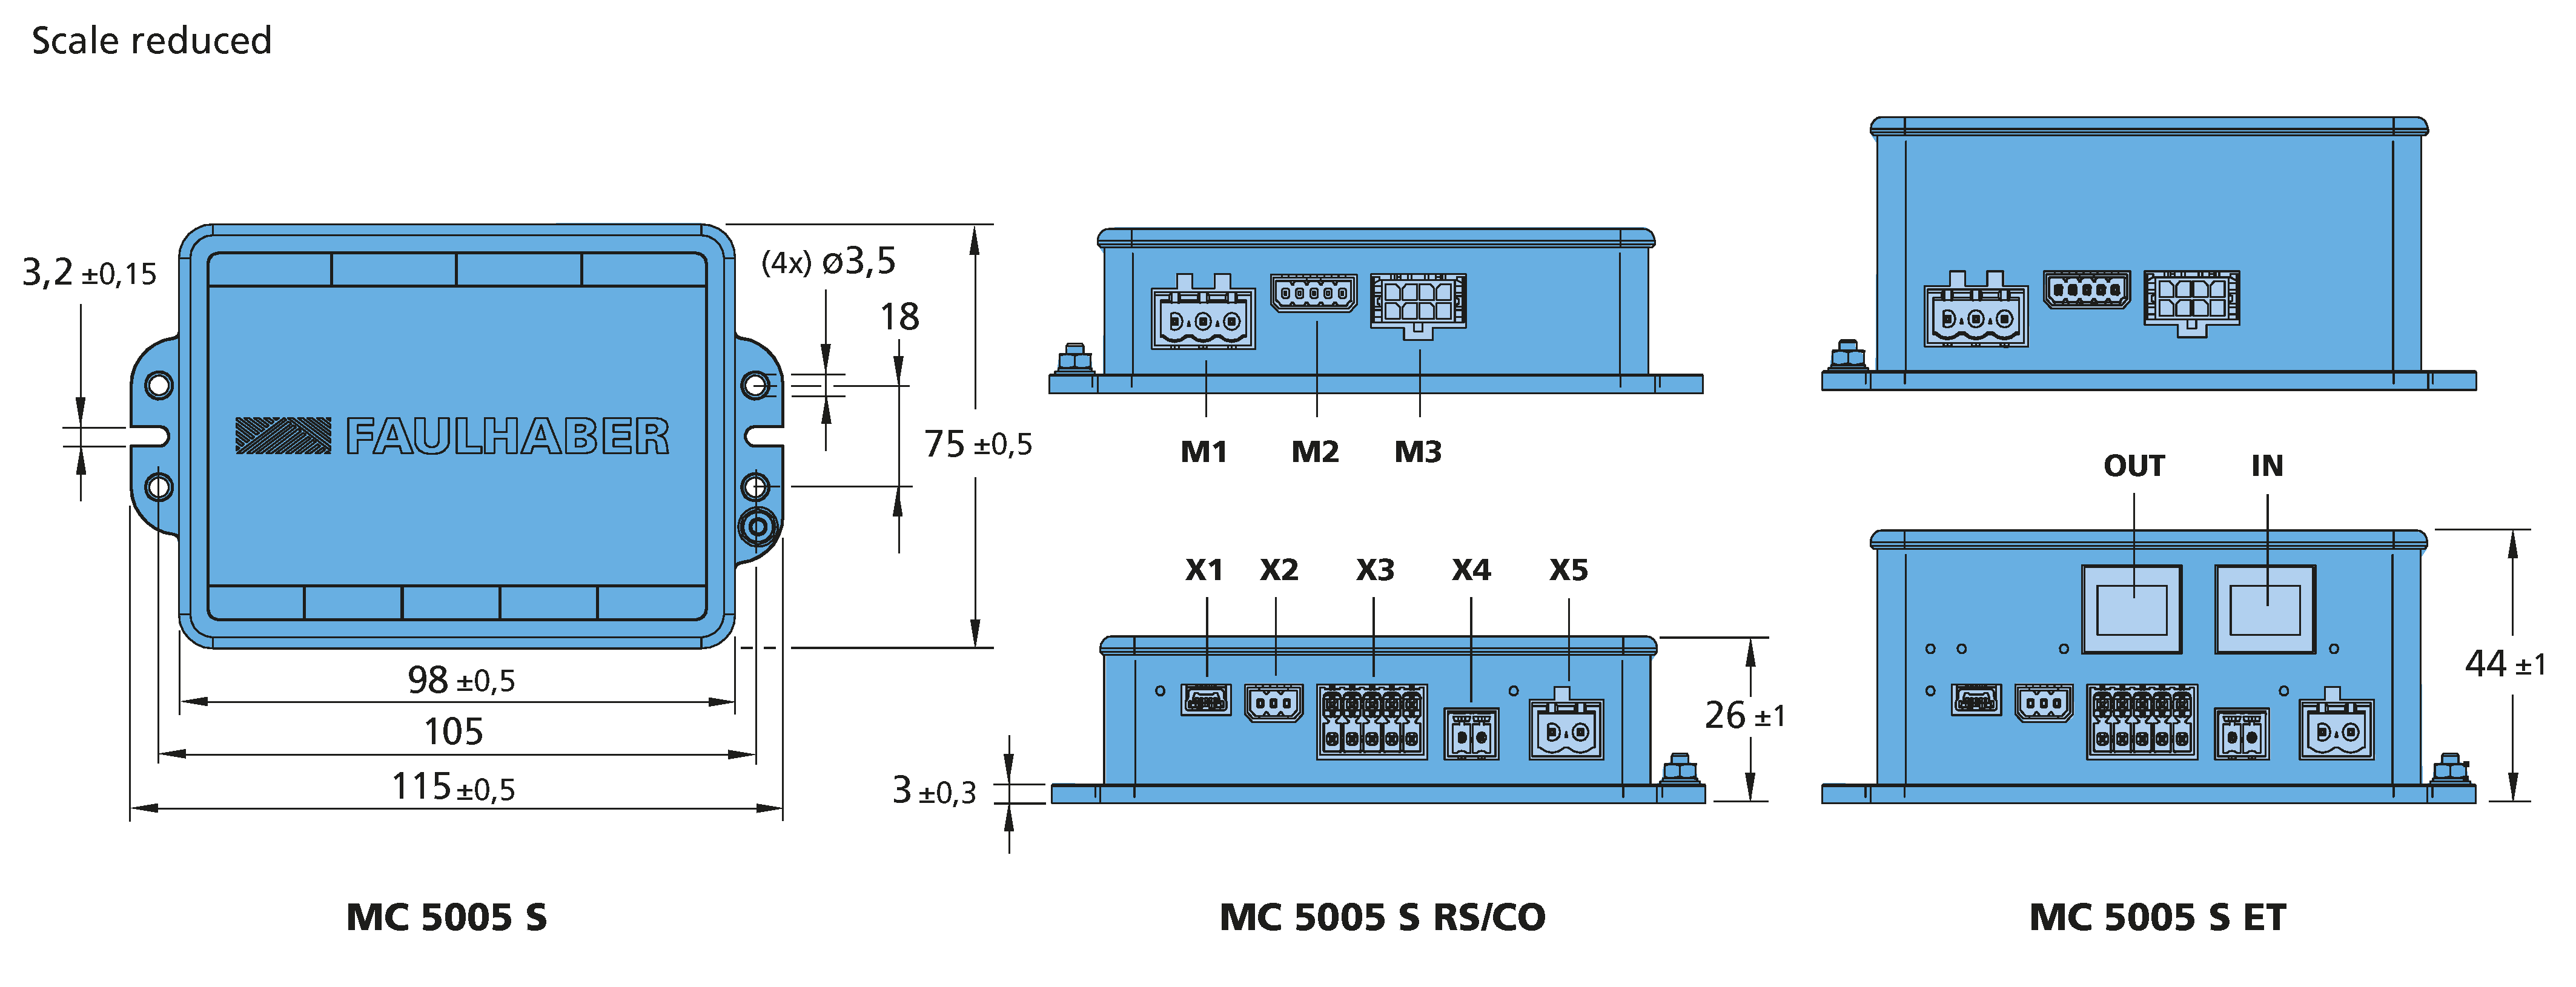 ドライブエレクトロニクス Series MC 5005 S